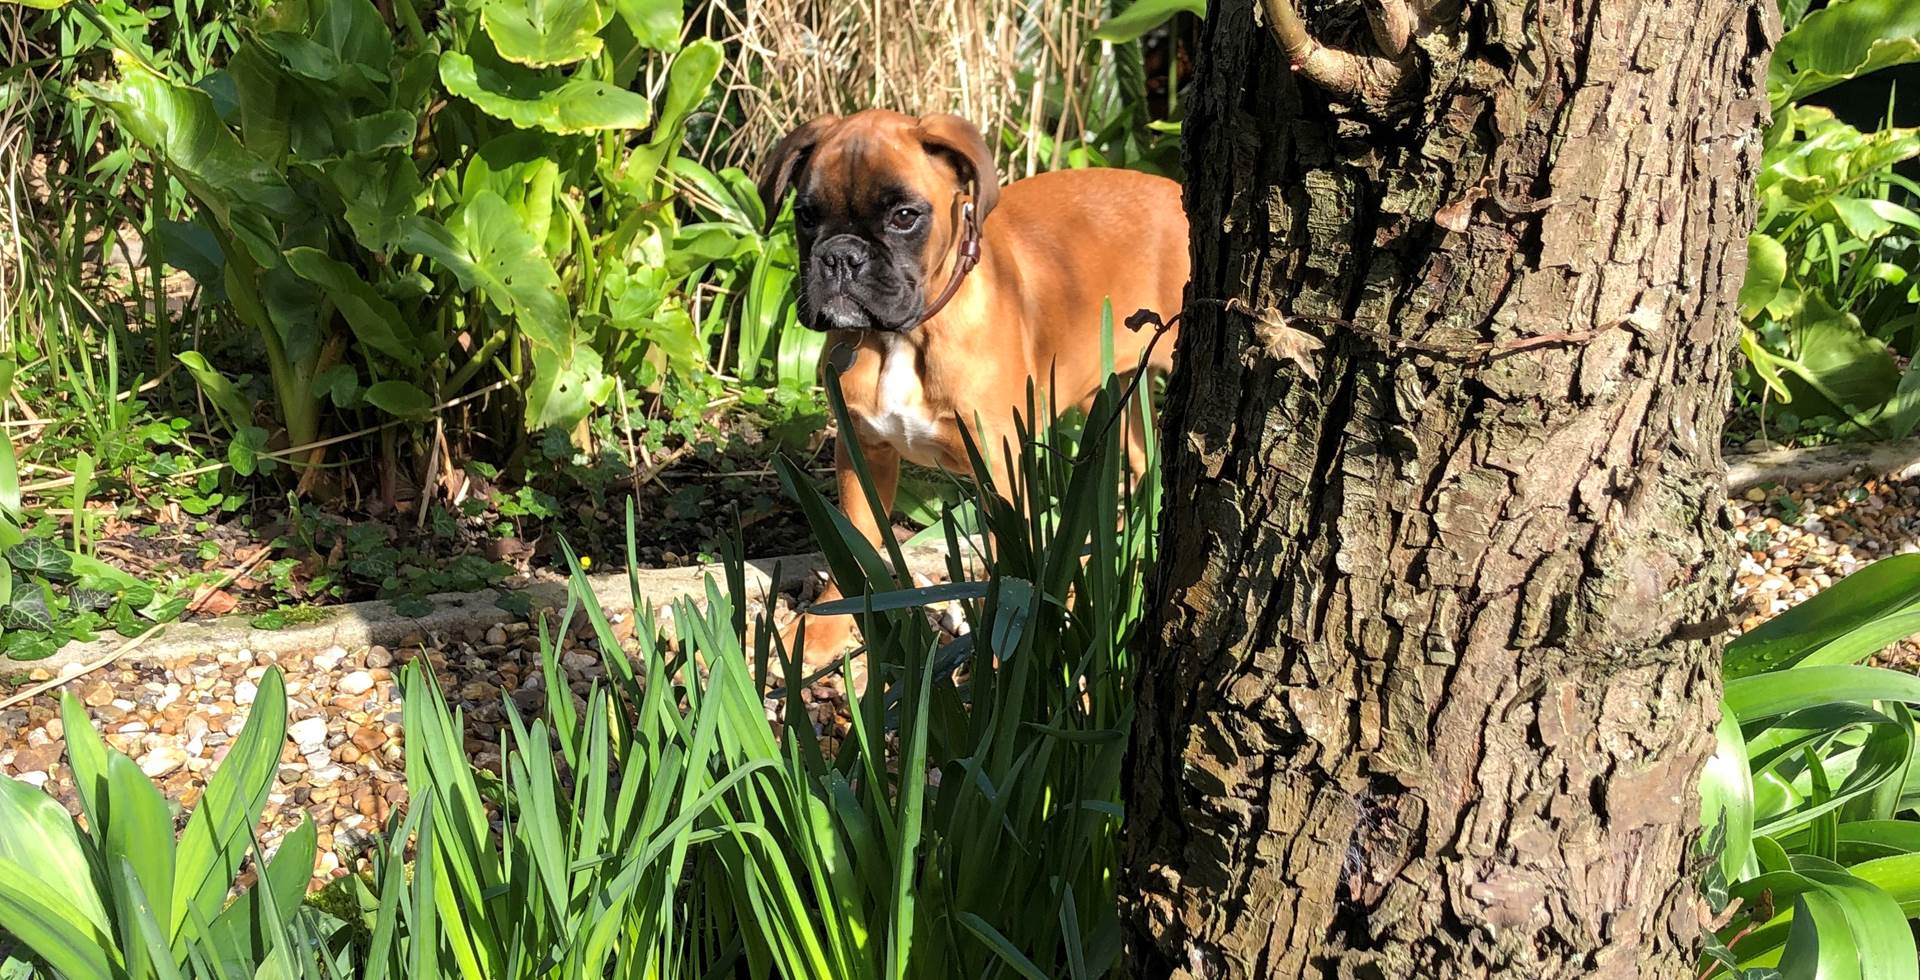 Praline joue à cache-cache dans le jardin